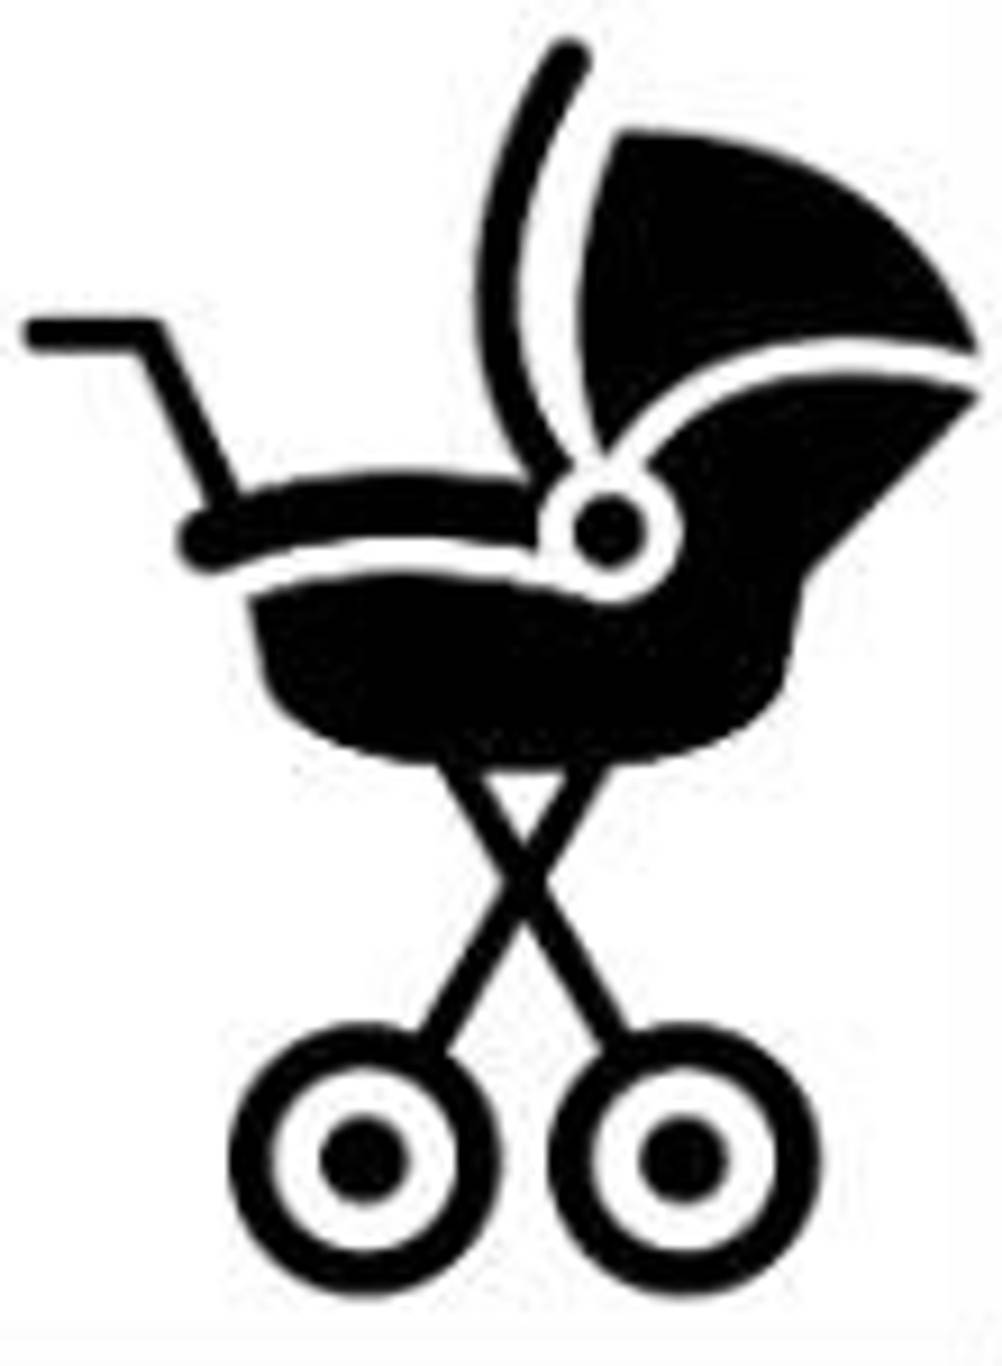 Cybex-Babyschalen können auf Kinderwagen montiert werden.